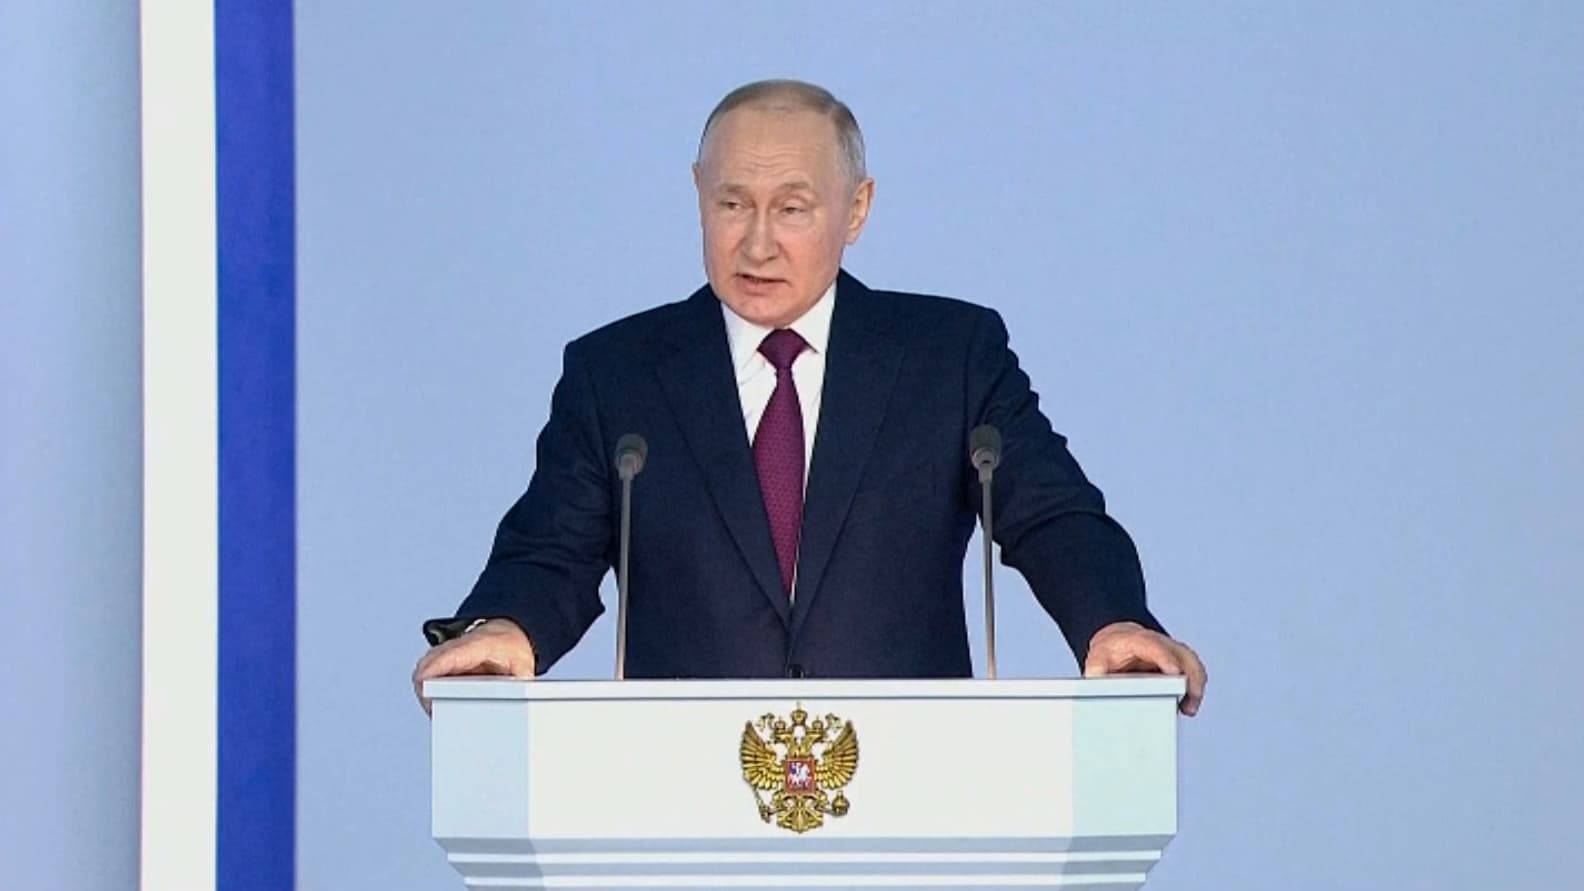 Dans son discours a la nation Poutine promet de continuer soigneusement son offensive en Ukraine 1582344 - OnzedAfrik